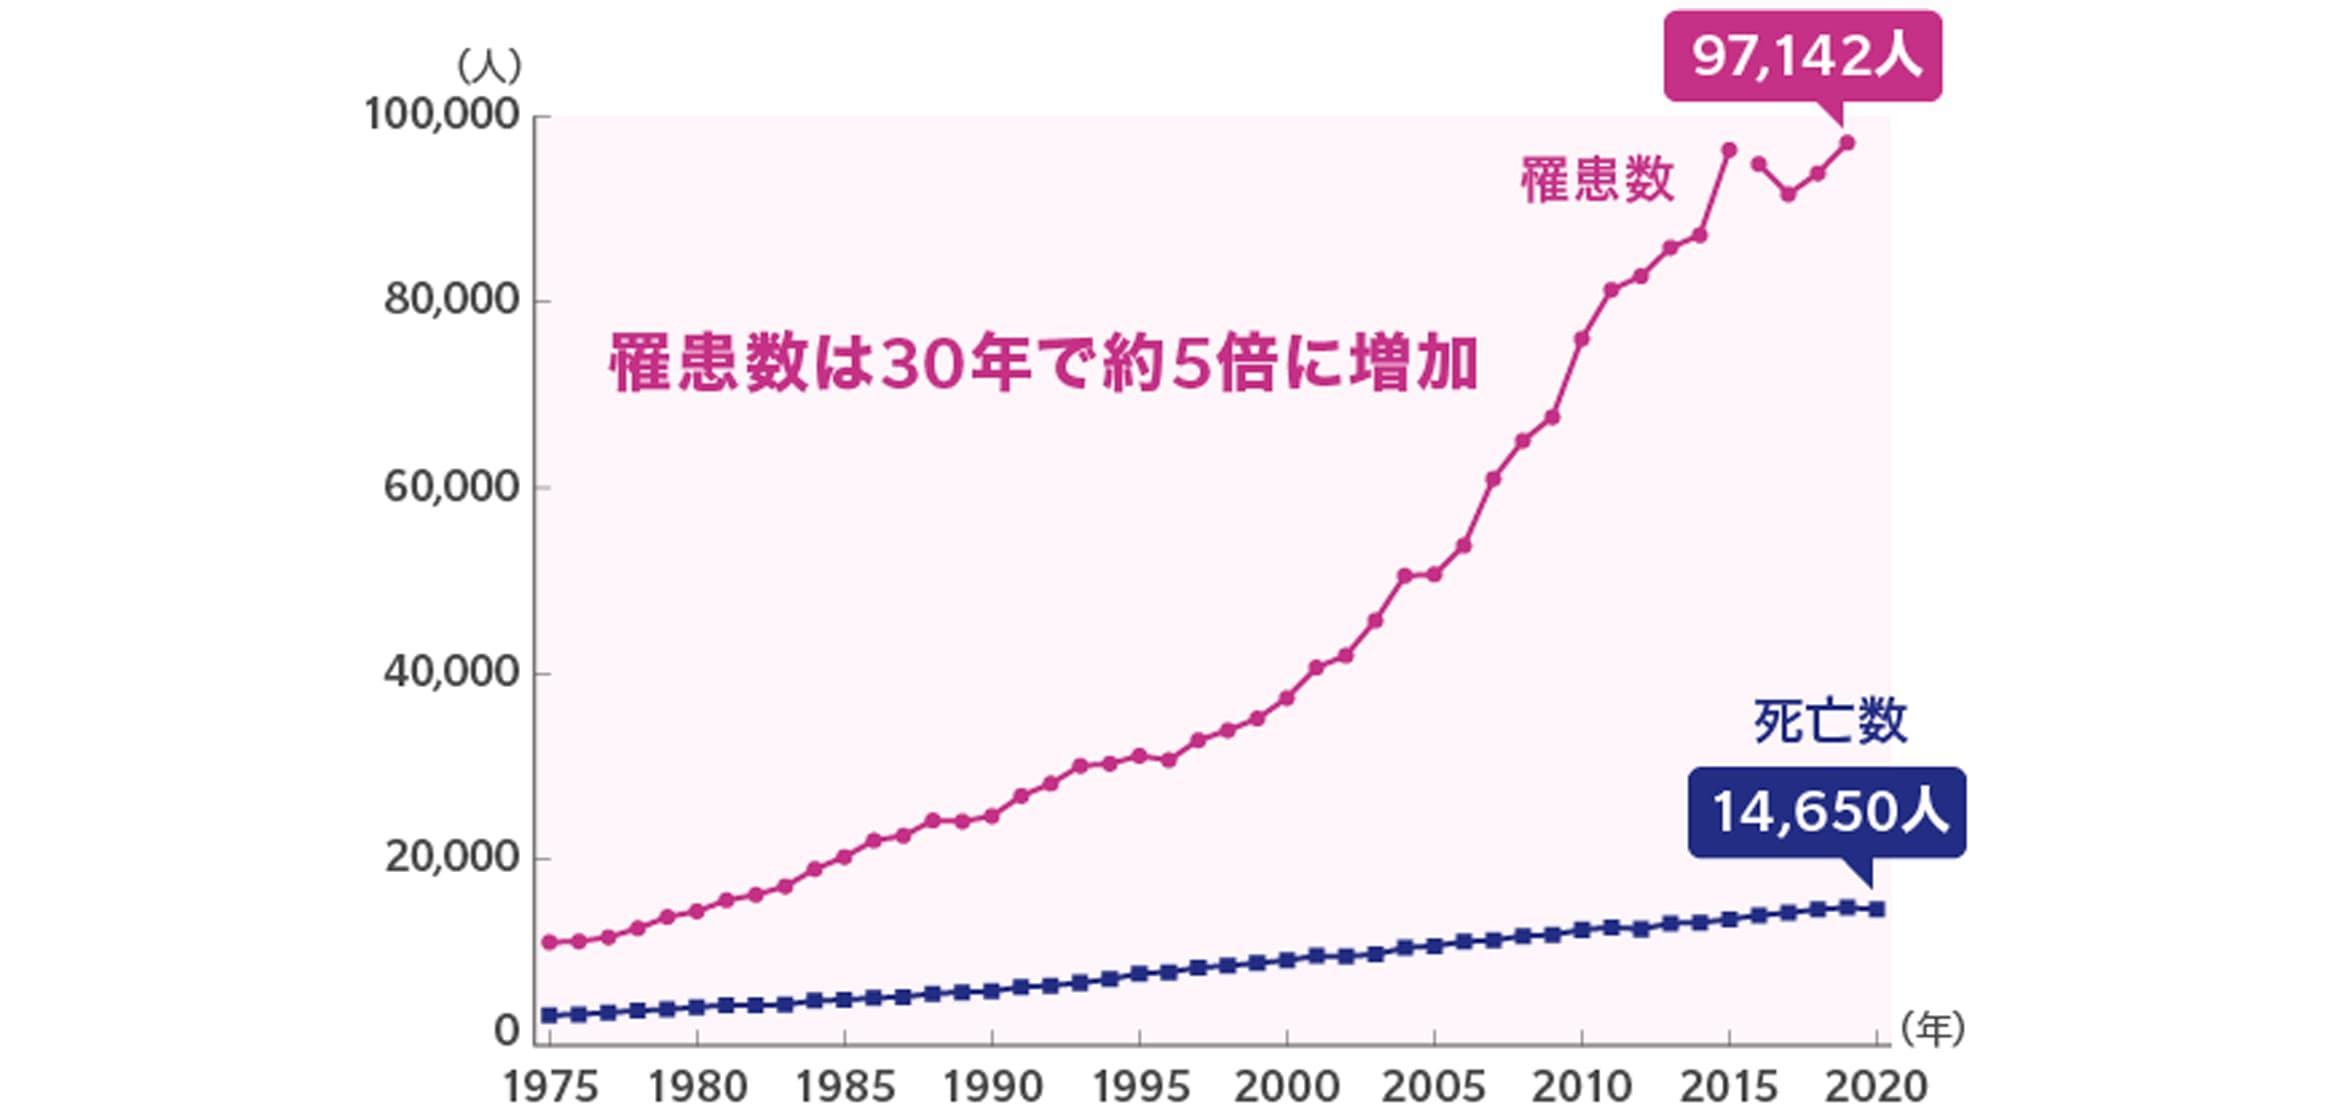 乳がん罹患数と死亡数の年次推移